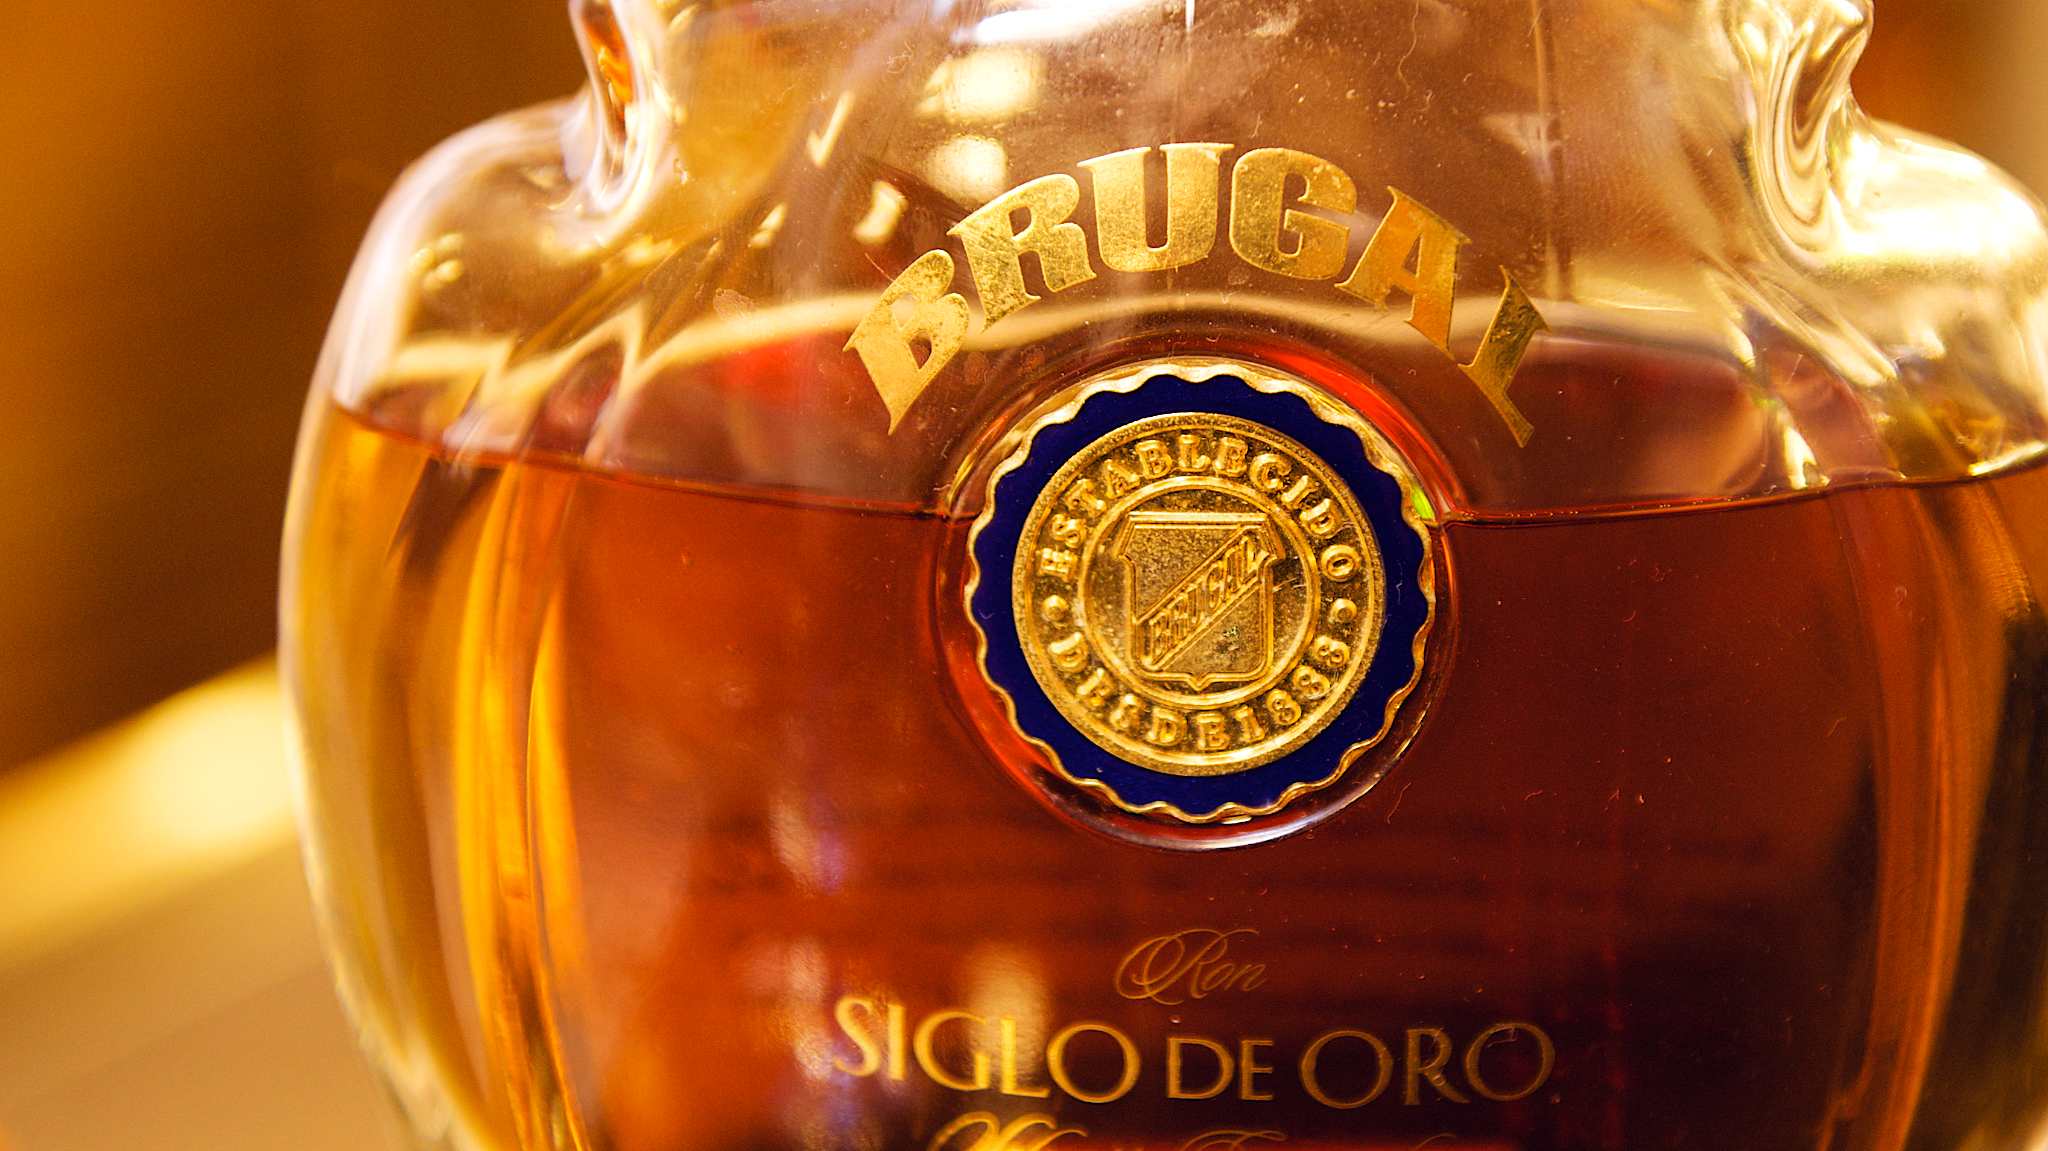 Brugal Siglo de Oro Rum